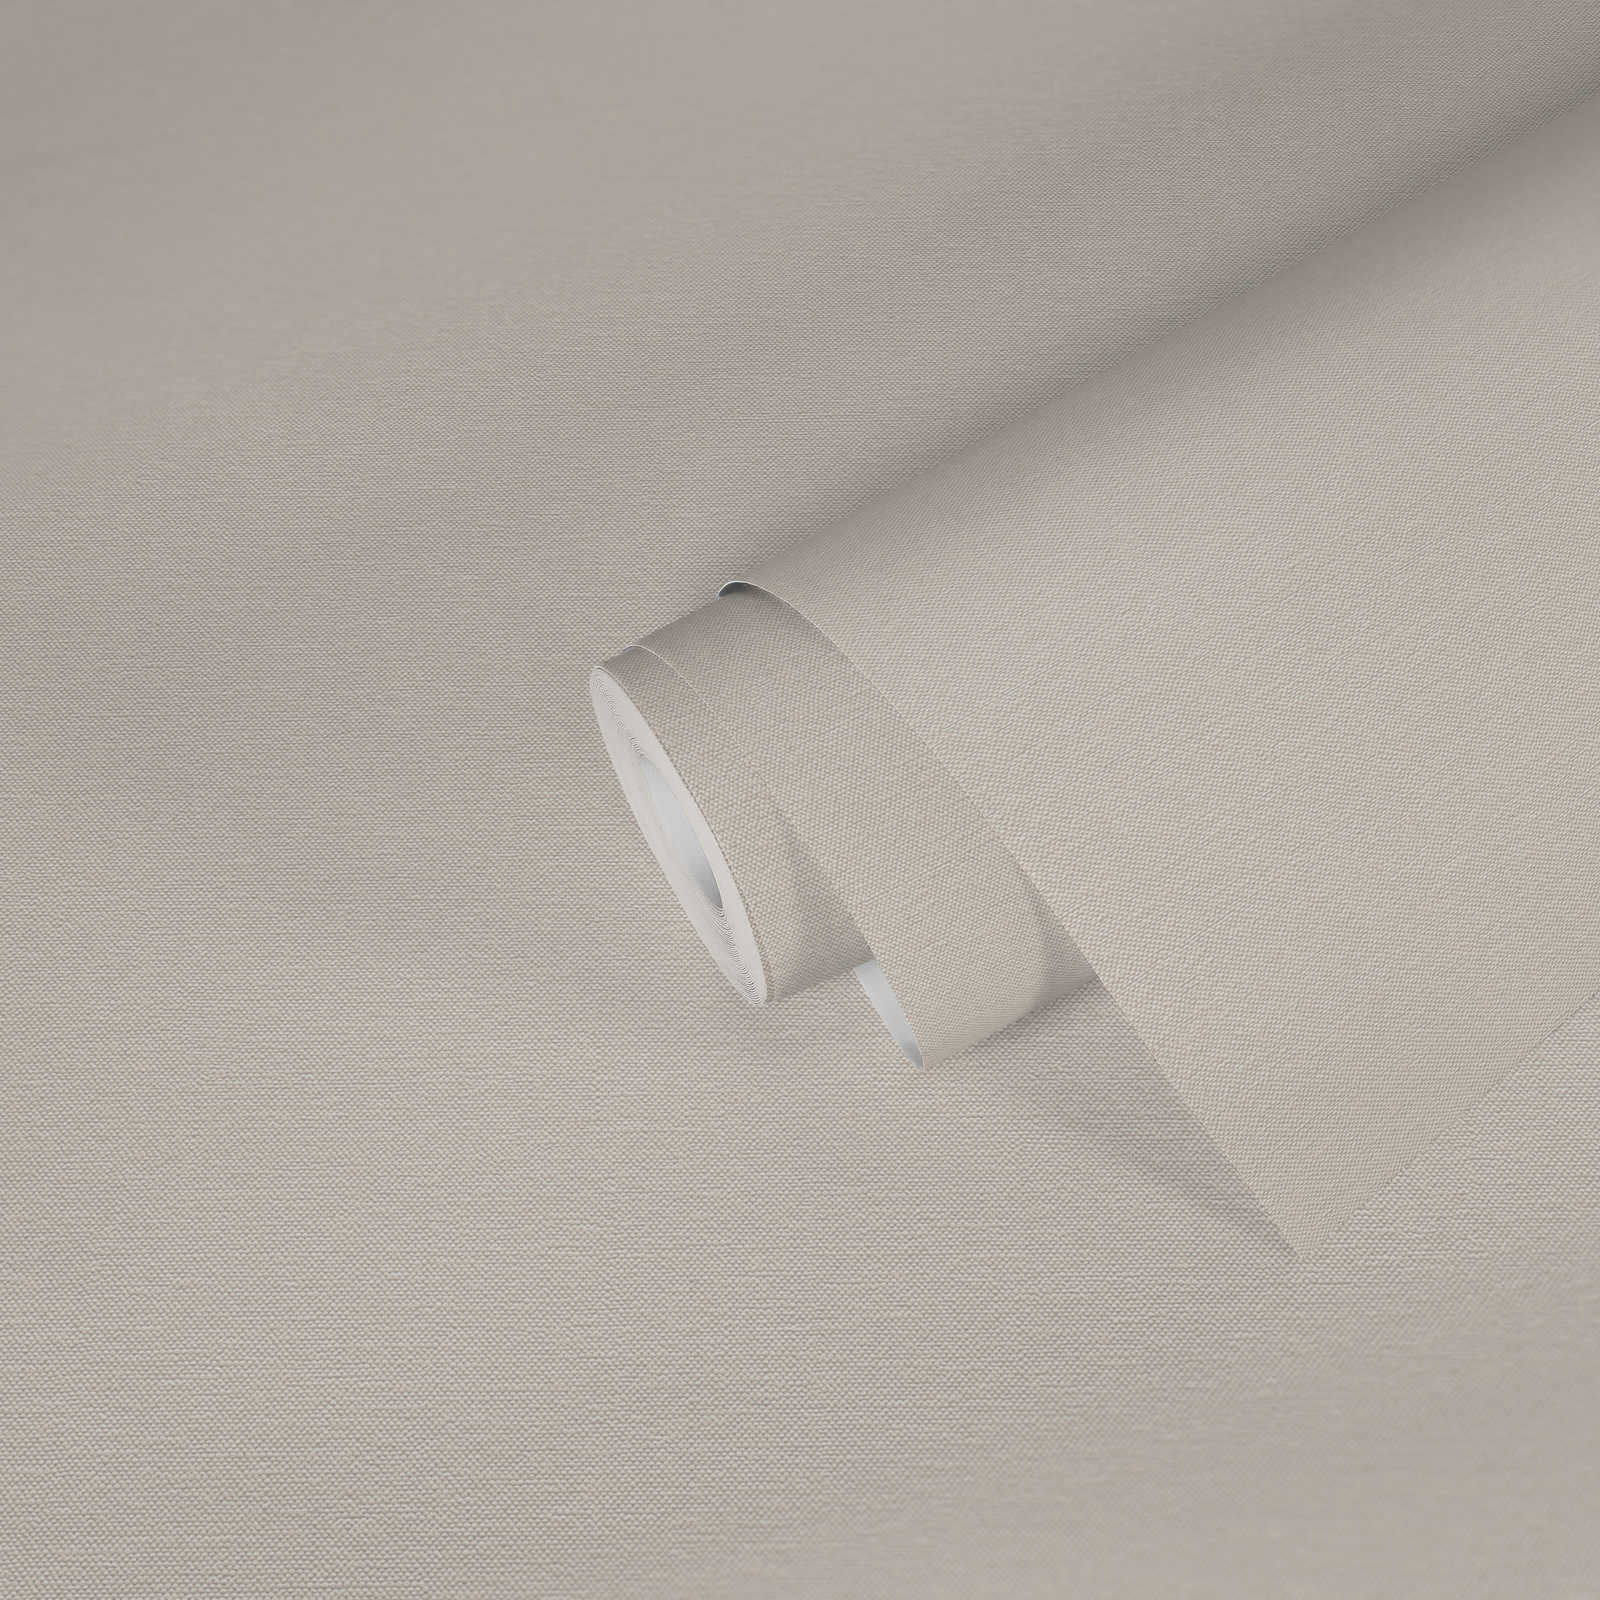             papier peint en papier uni avec structure tissée mat - blanc
        